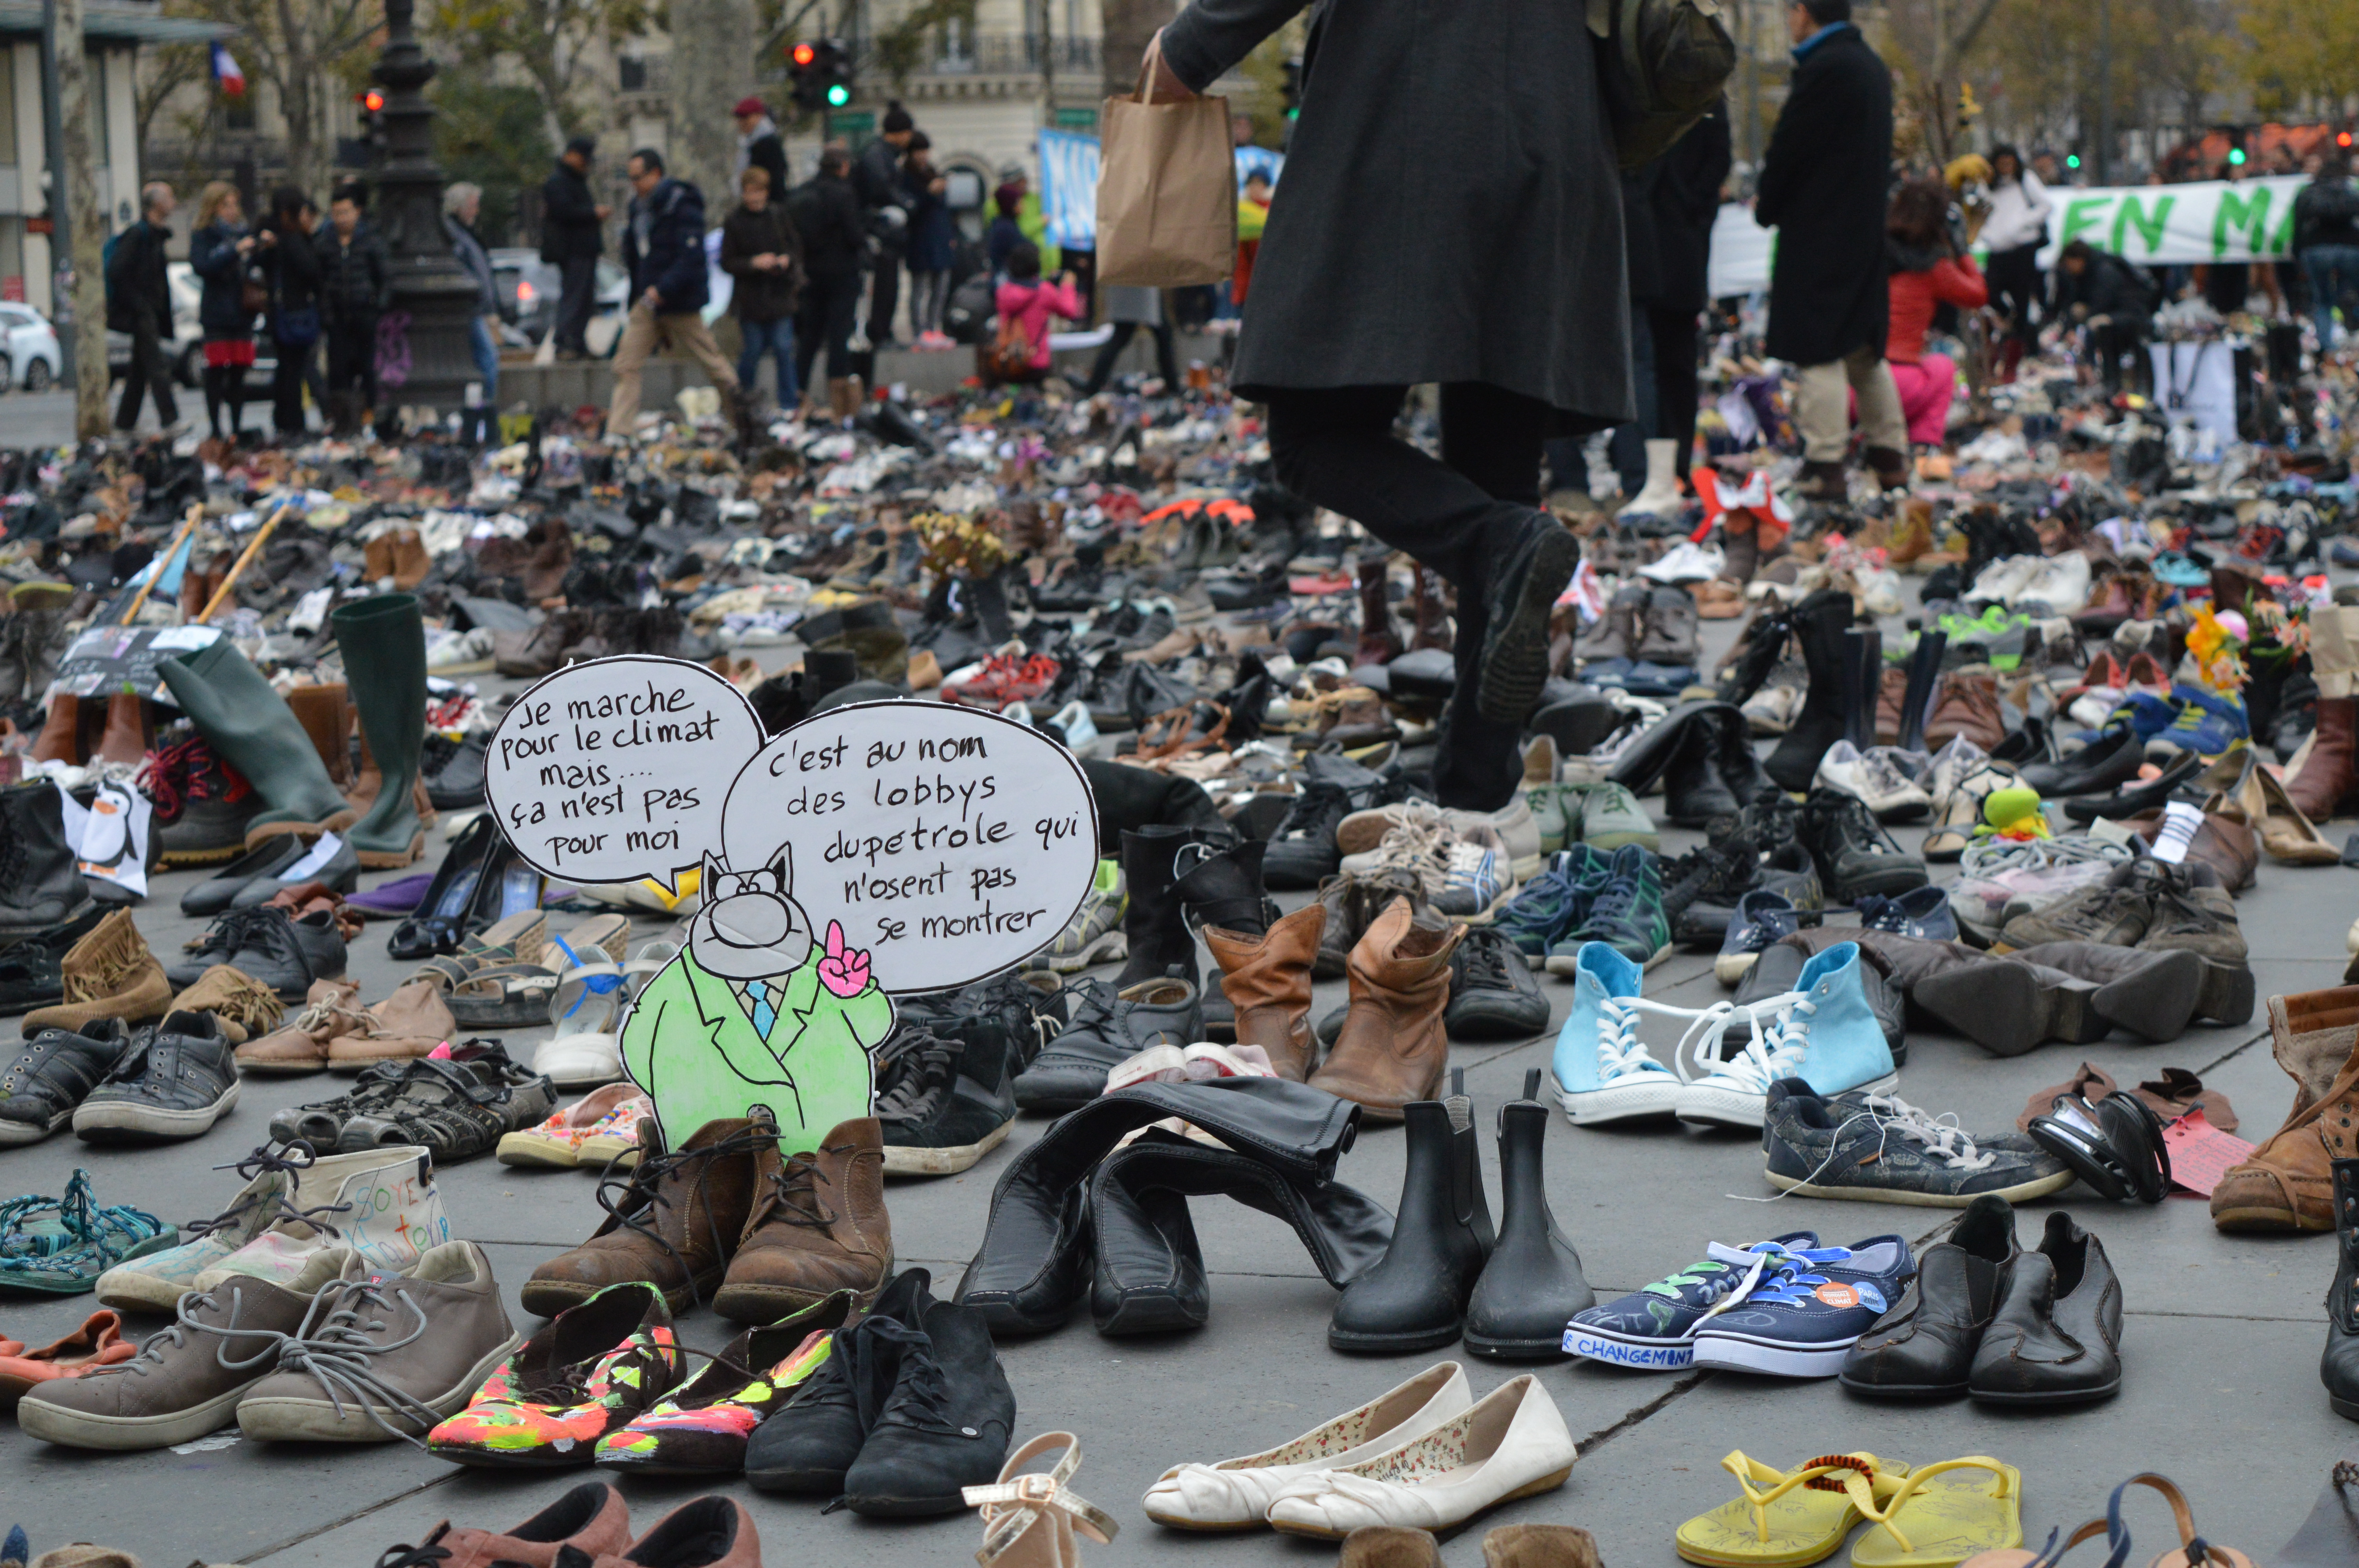 Párizsban a terror miatt betiltották a klímamenetet, és Párizs a lehető legmenőbb módon válaszolt